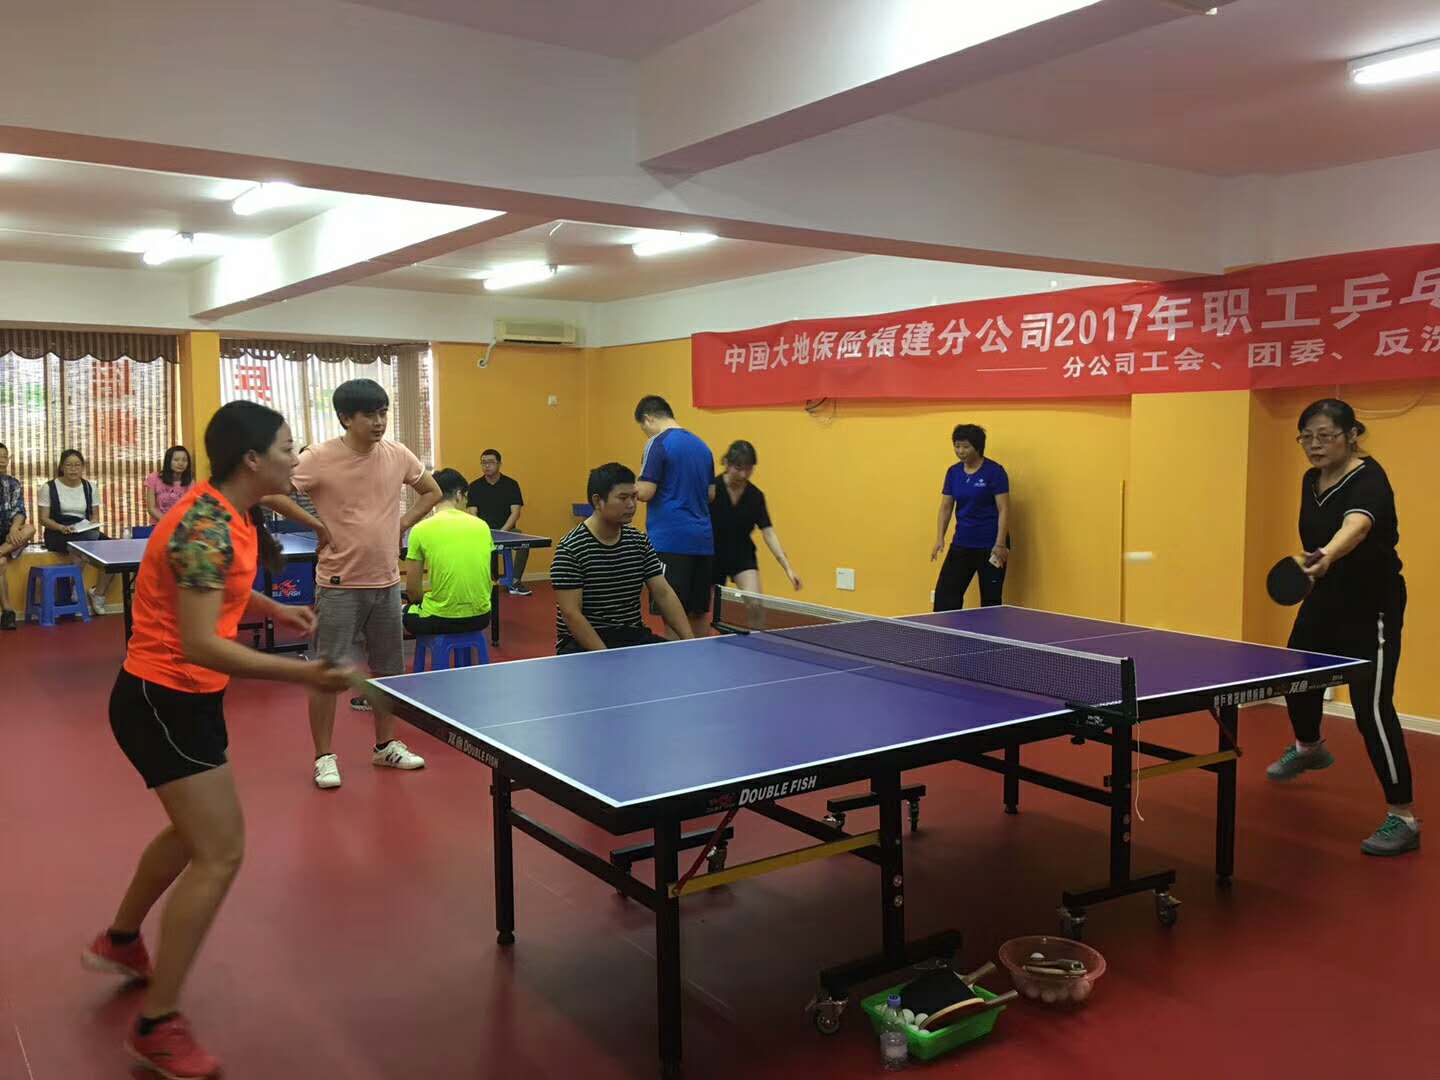 10月21日中国大地保险福建分公司乒乓球赛.jpg